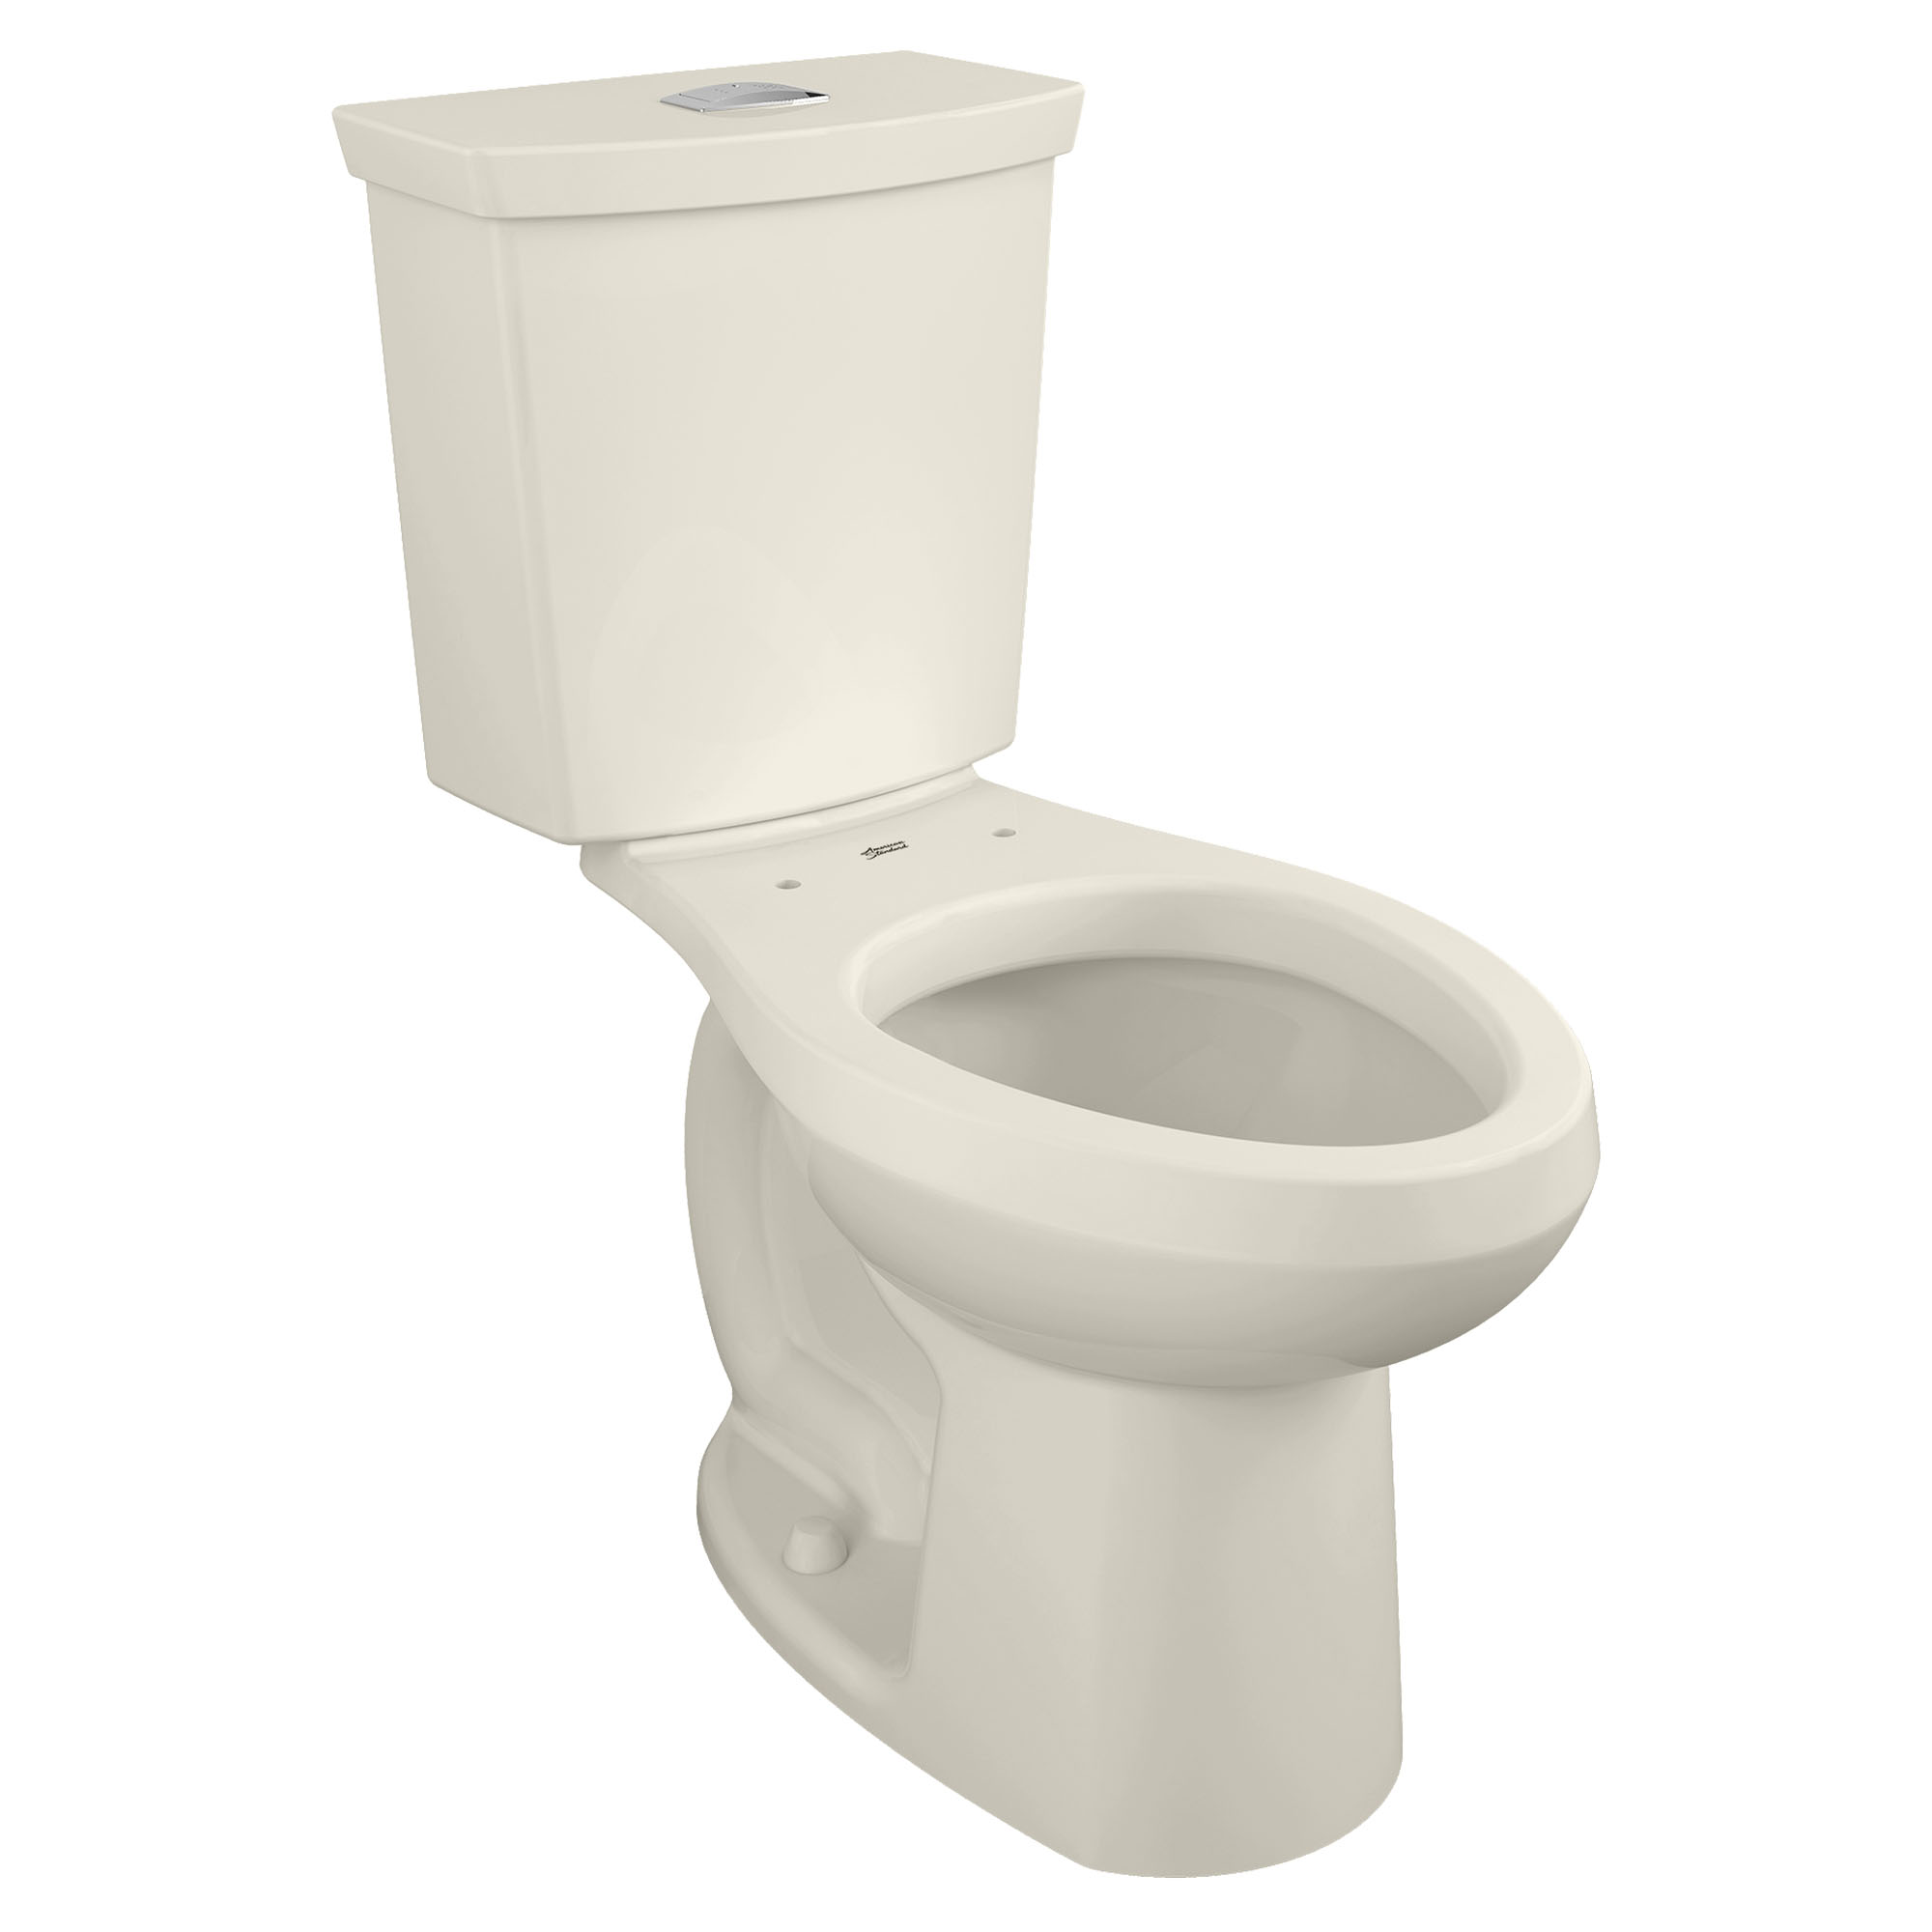 Toilette H2Option, 2 pièces, chasse double 1,28 gpc/4,8 lpc et 0,92 gpc/3,5 lpc, à cuvette allongée à hauteur de chaise, sans siège